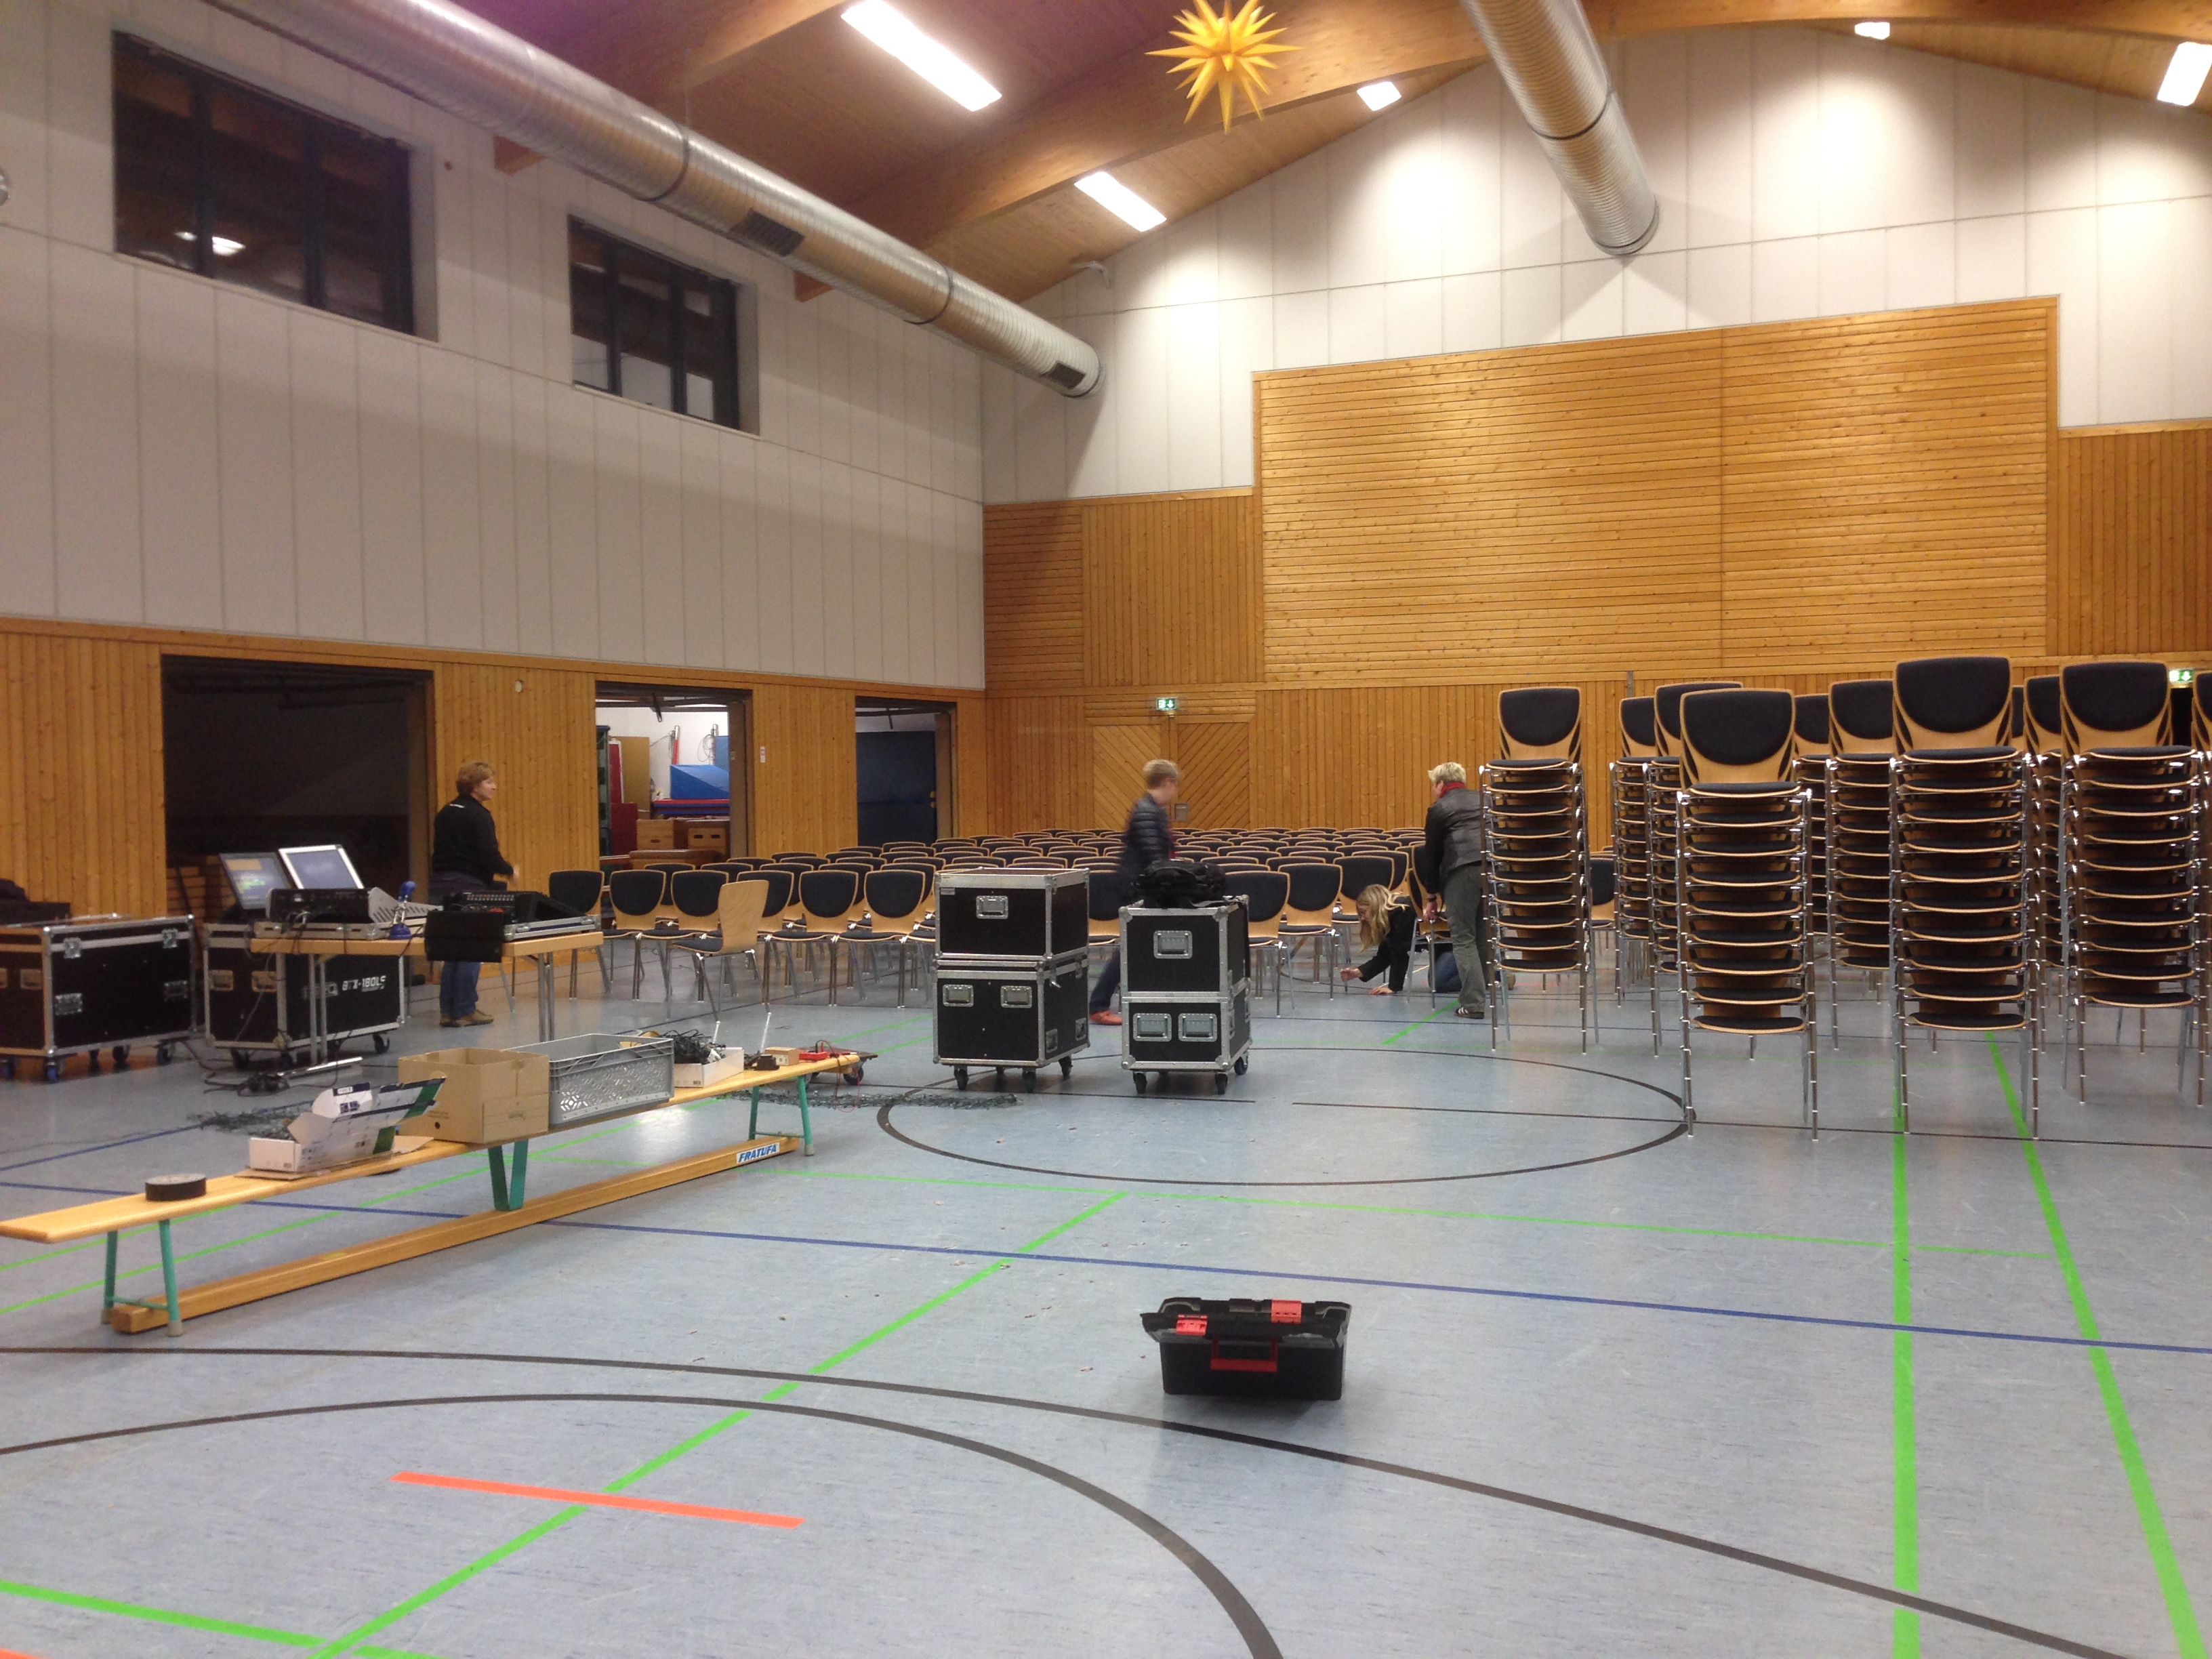 Noch befindet sich die Halle im Chaos. Die Ton- und Lichttechnik ist schon am werkeln und einige Stühle sind aufgestellt.